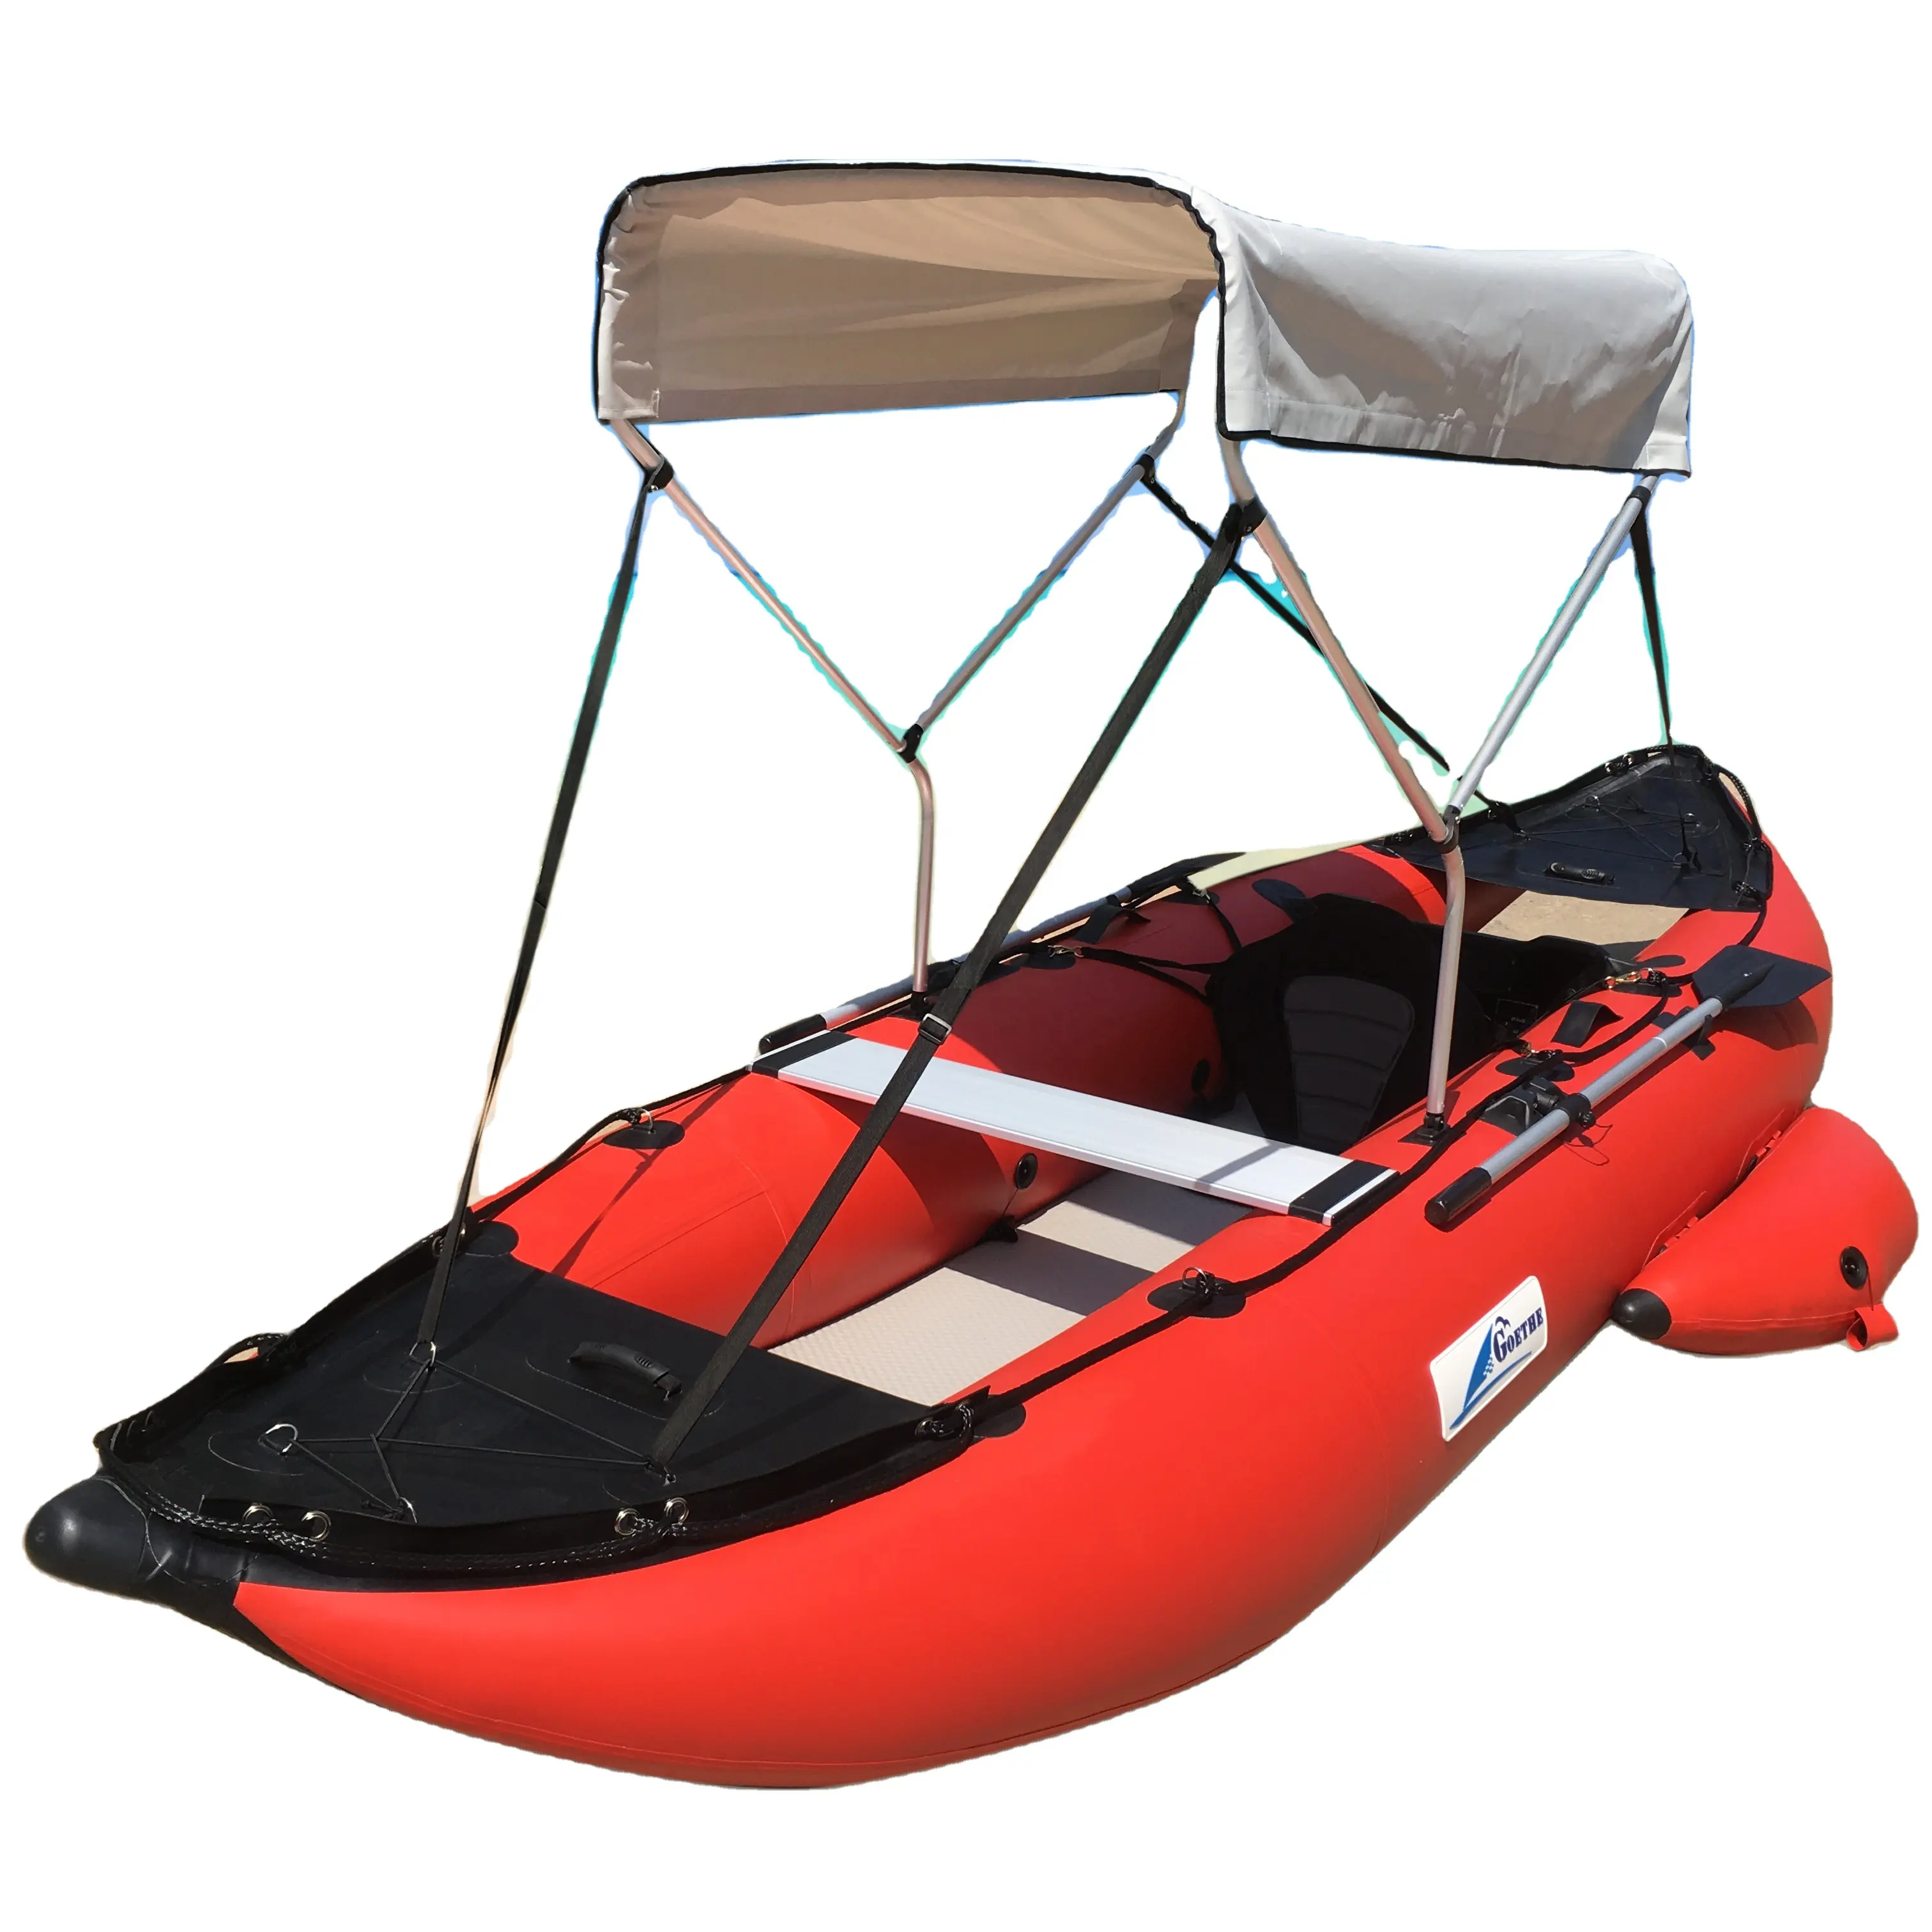 Goethe — bateau gonflable de pêche à rames avec siège en aluminium, 14ft, GTKA435